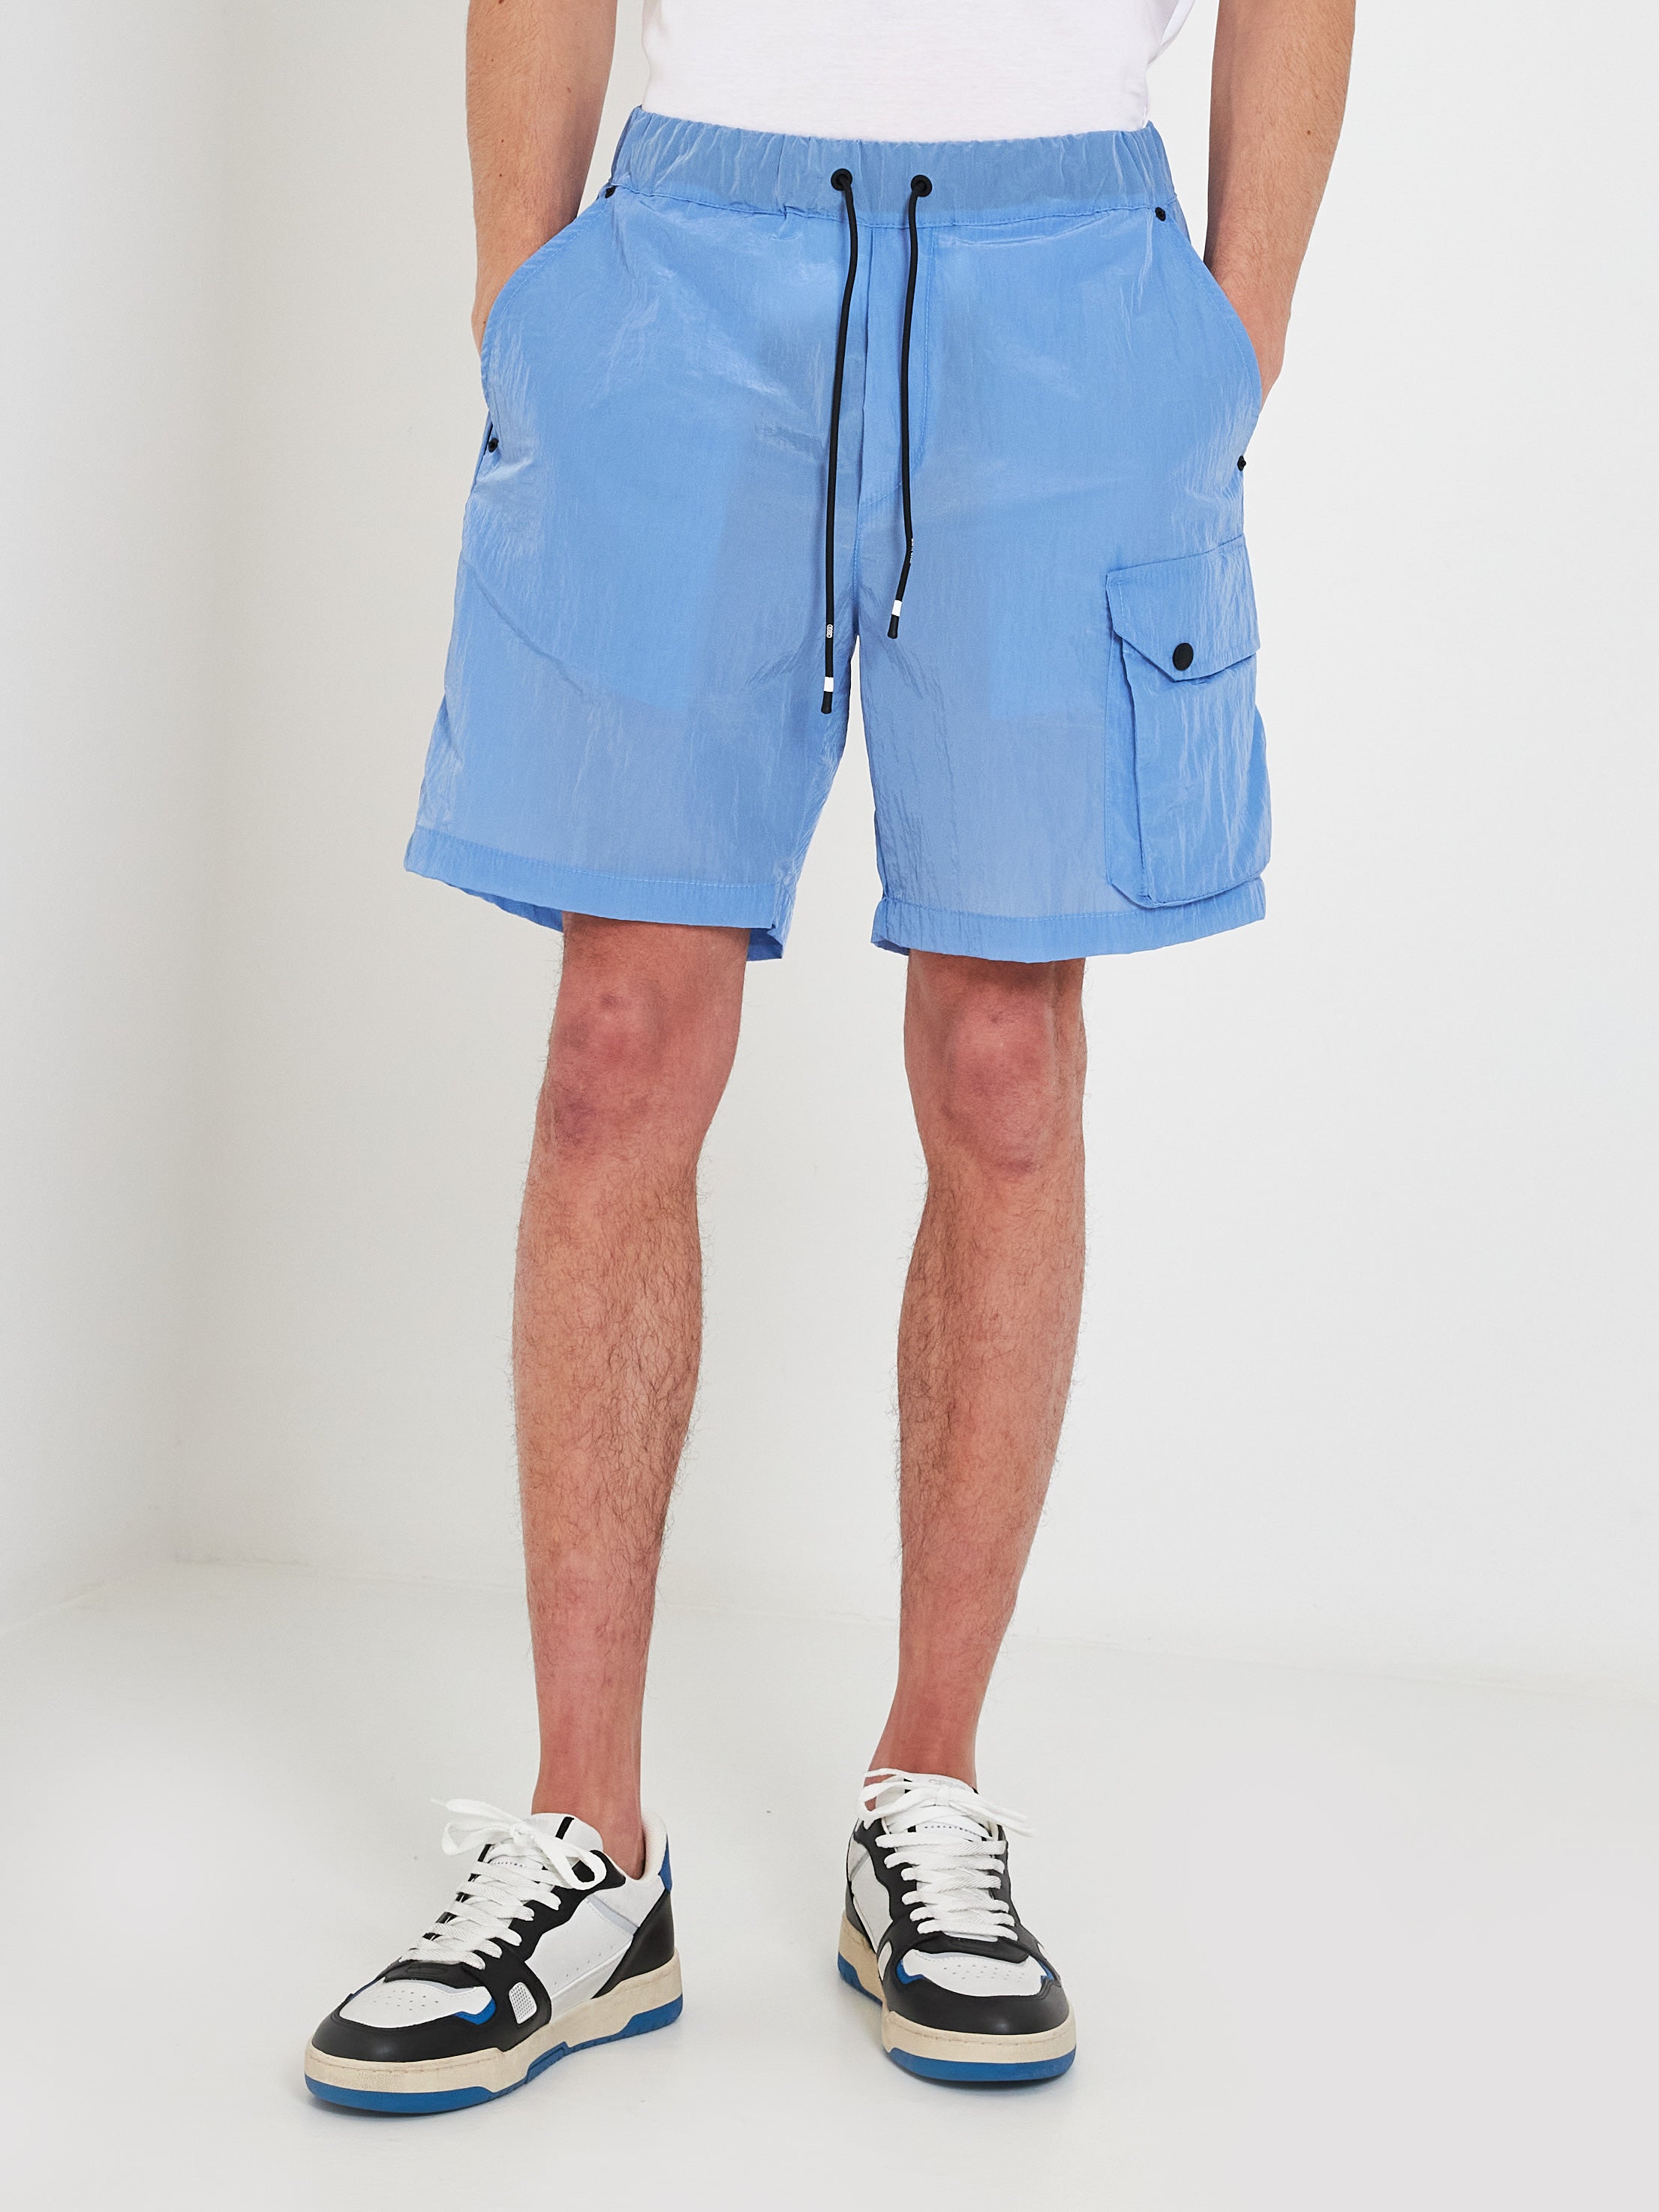 White Over light blue Bermuda shorts